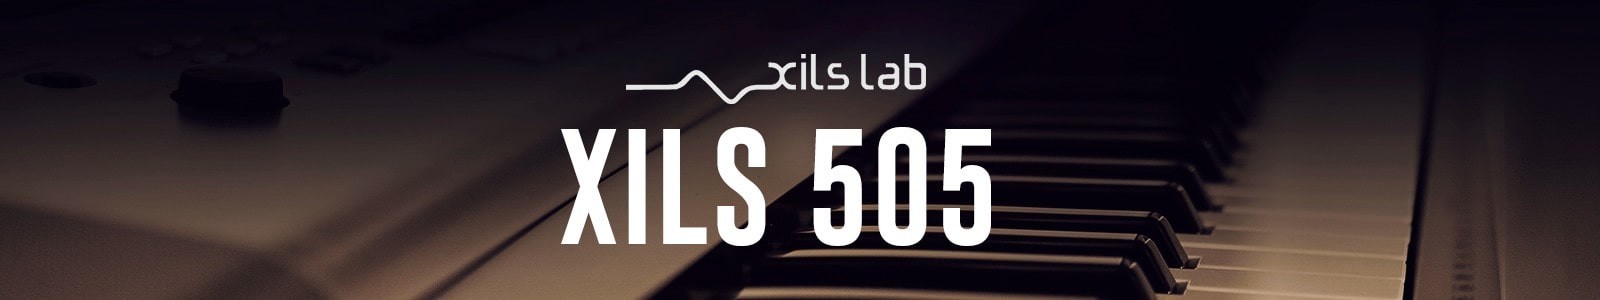 XILS-Lab XILS 505